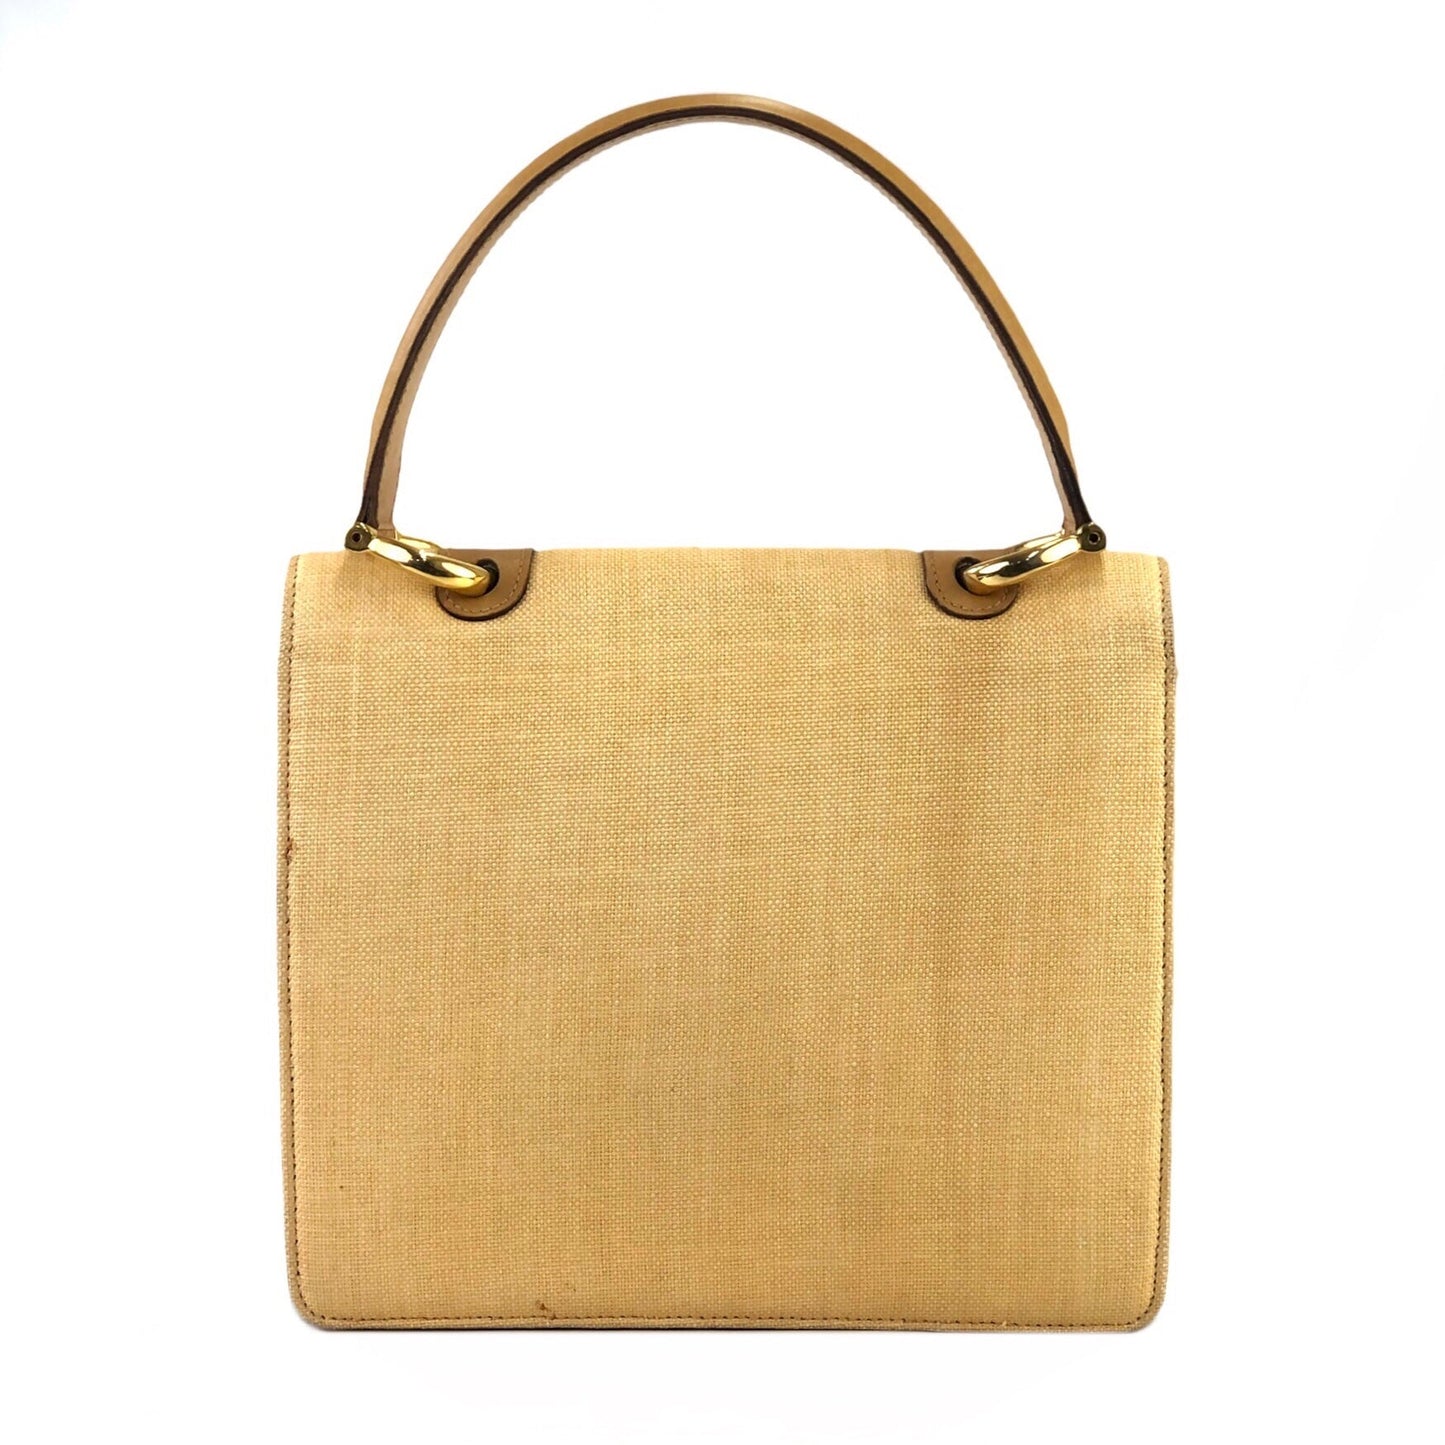 CELINE Raffia Basket weave Double flap Tophandle Handbag Beige Vintage Old CELINE 3fkipd